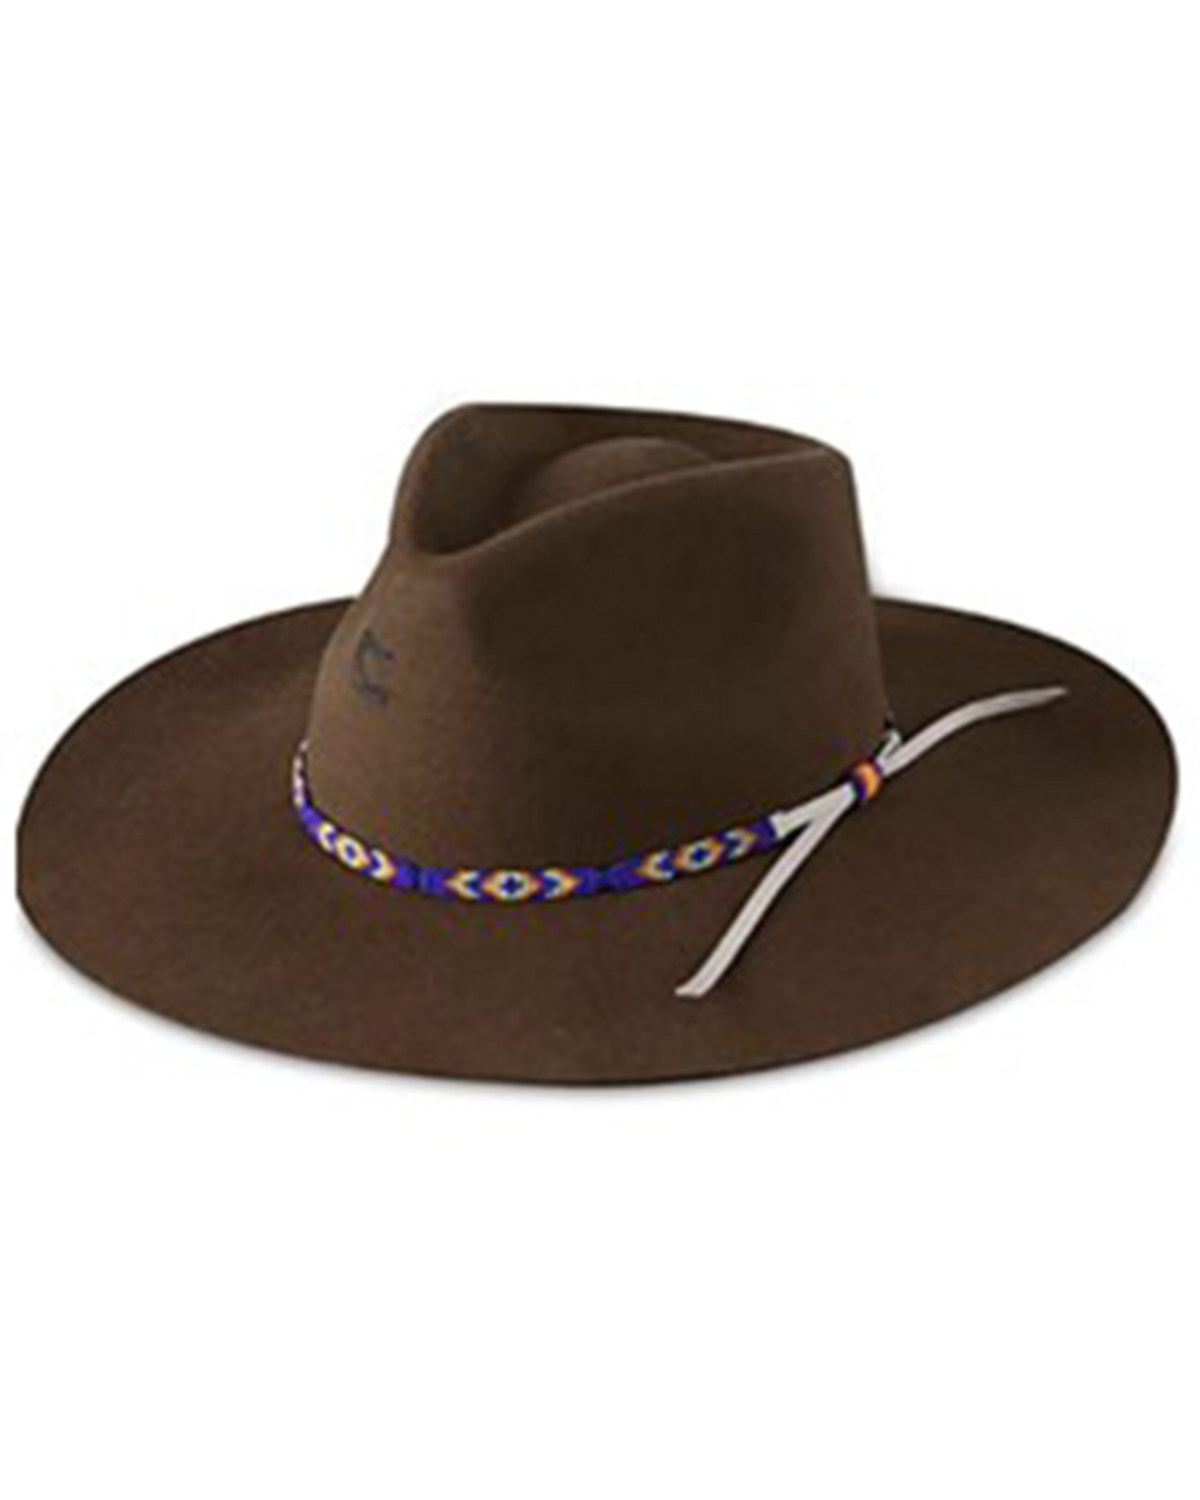 Charlie 1 Horse Women's Gypsy Felt Western Fashion Hat